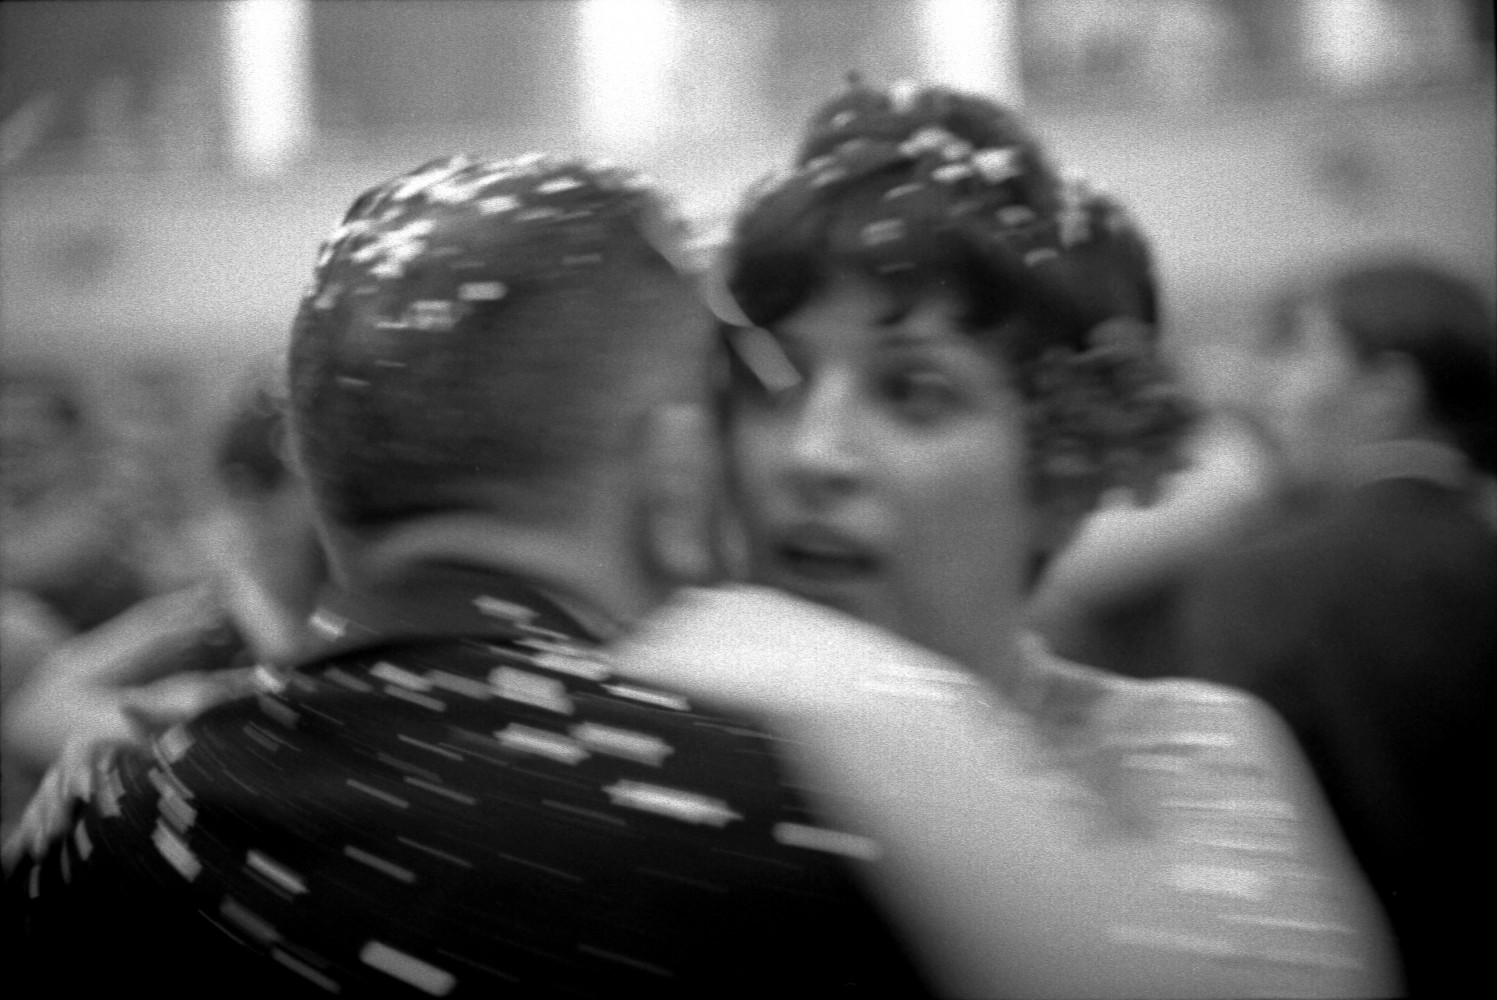 Toni Nicolini, Coppie ballano un lento durante la festa al Teatro comunale Vittorio Emanuele II, Mortara (PV), 1966